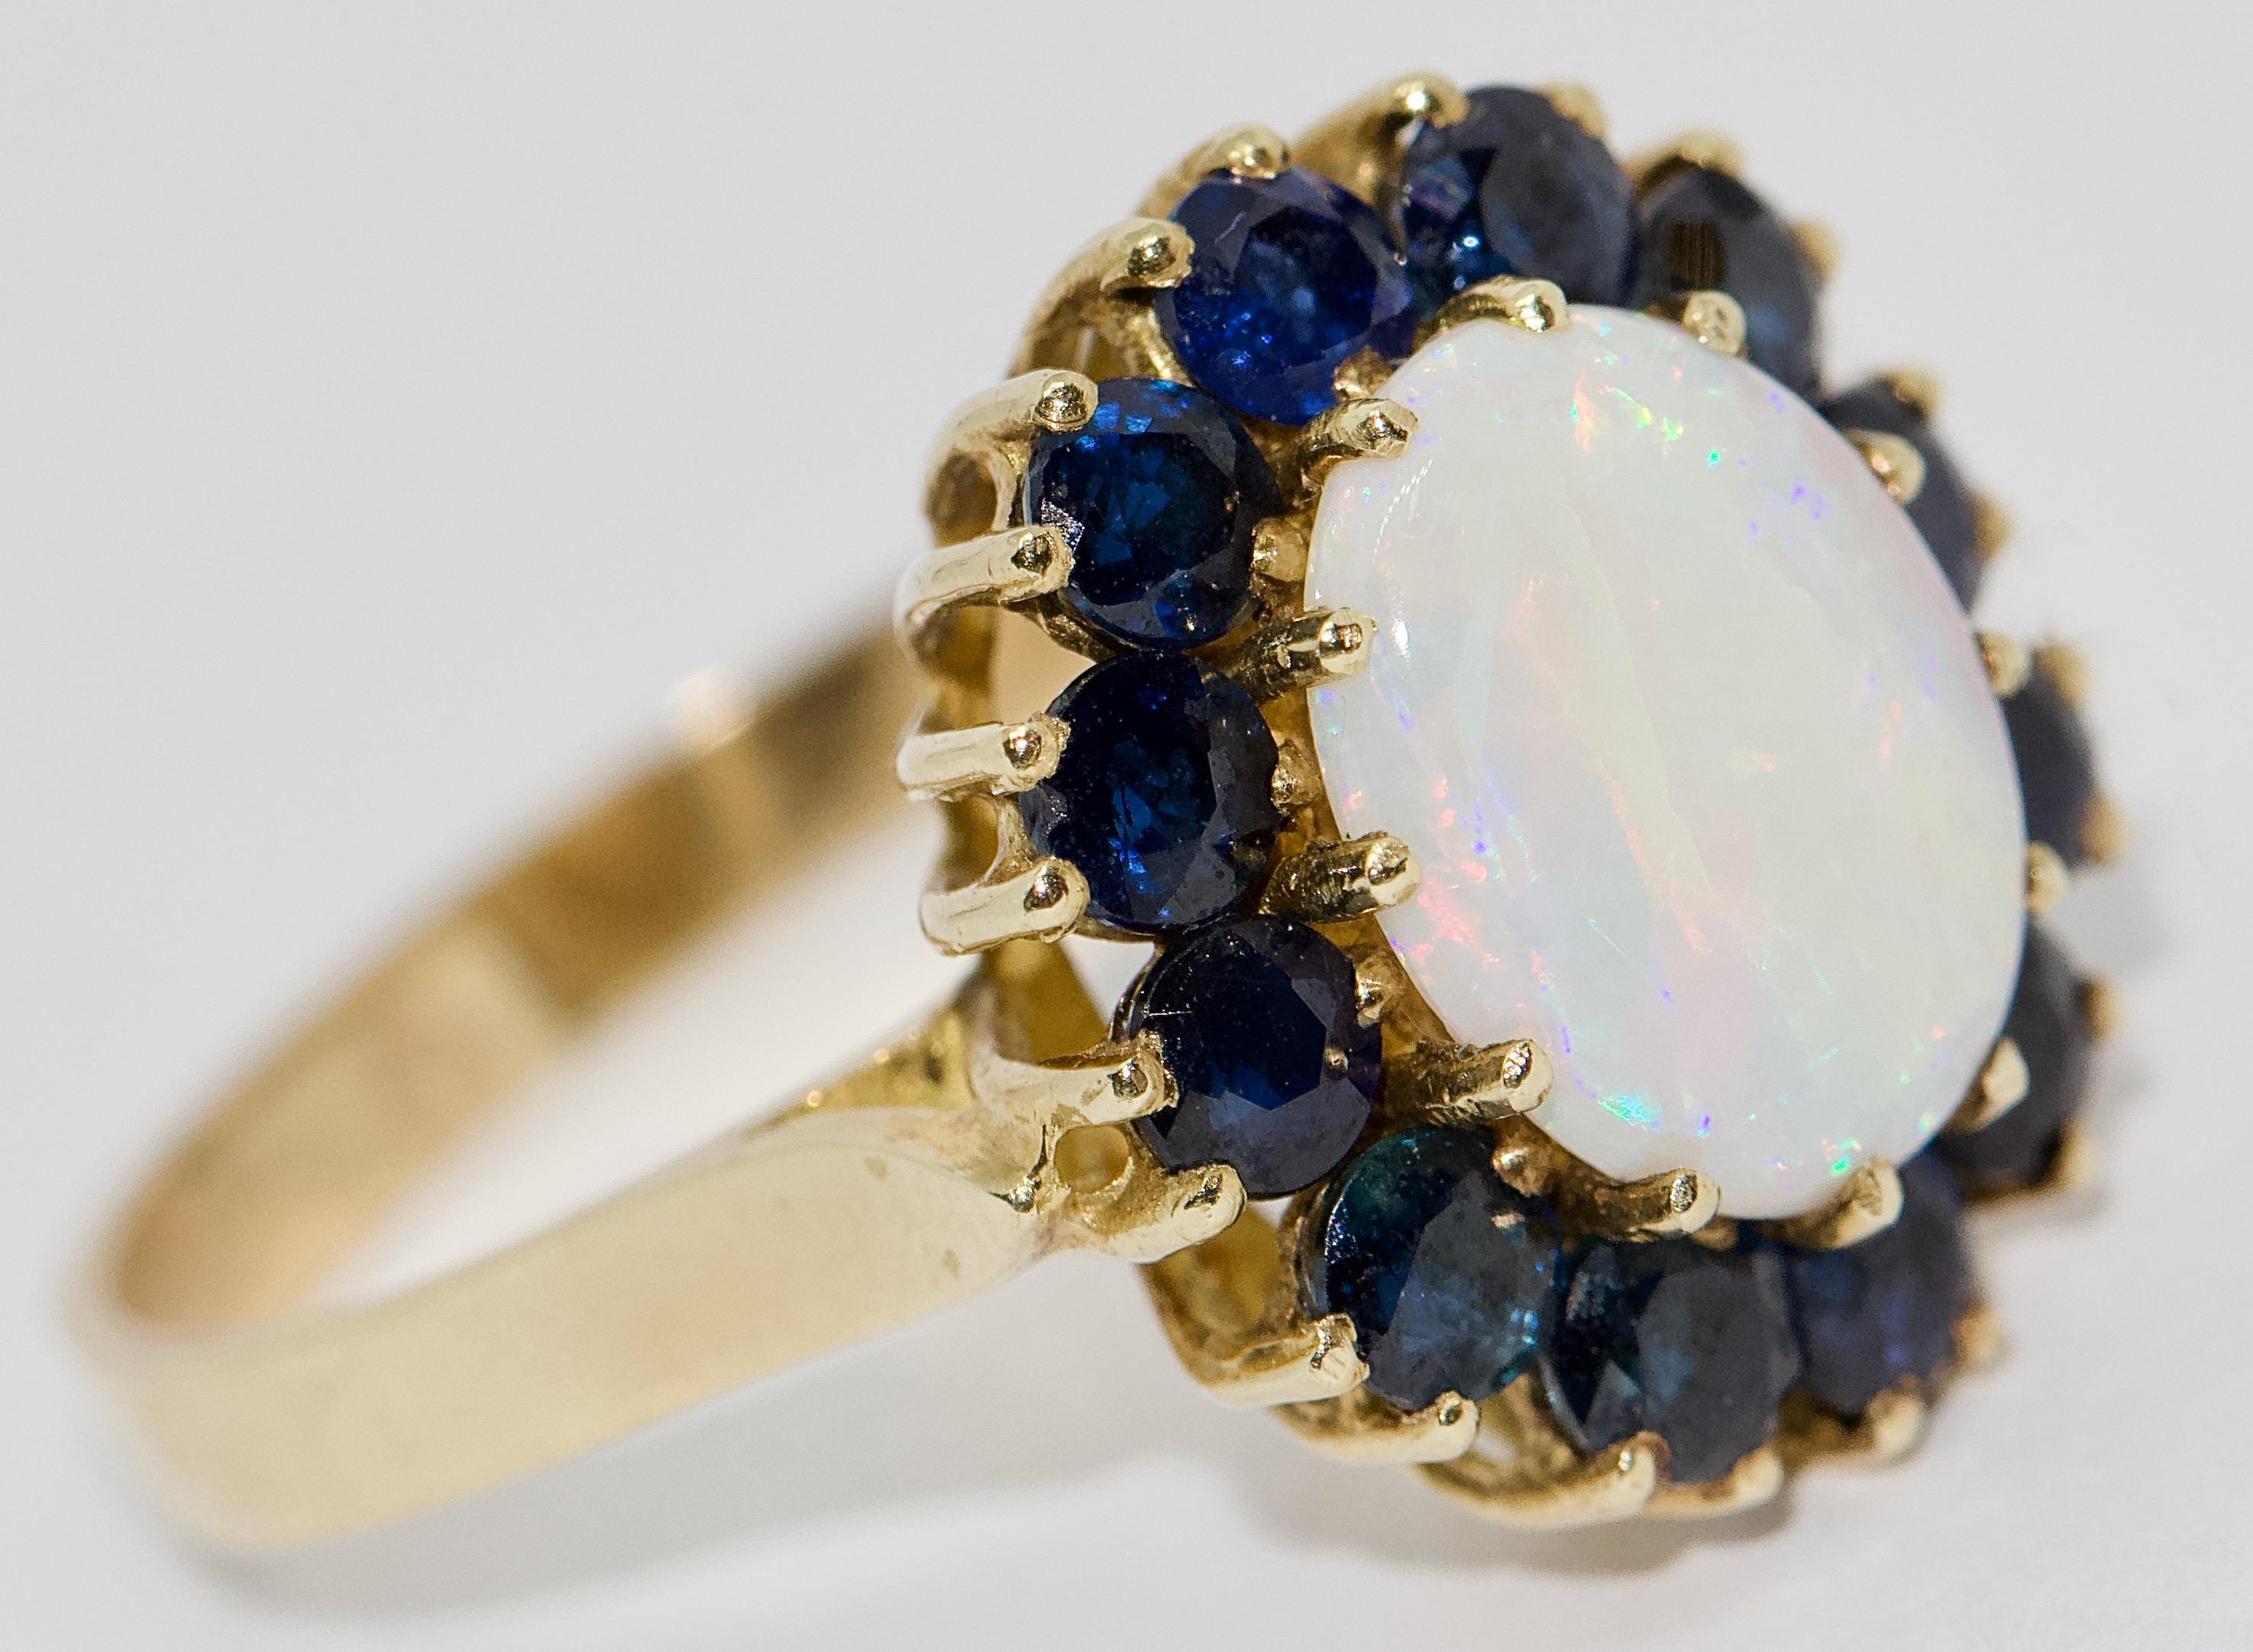 Hübscher Damen-Goldring mit großem Opal und blauen Saphiren.

Mit Echtheitszertifikat.

US-Ring Größe 8
Auf Wunsch können wir die Ringgröße fachmännisch anpassen.